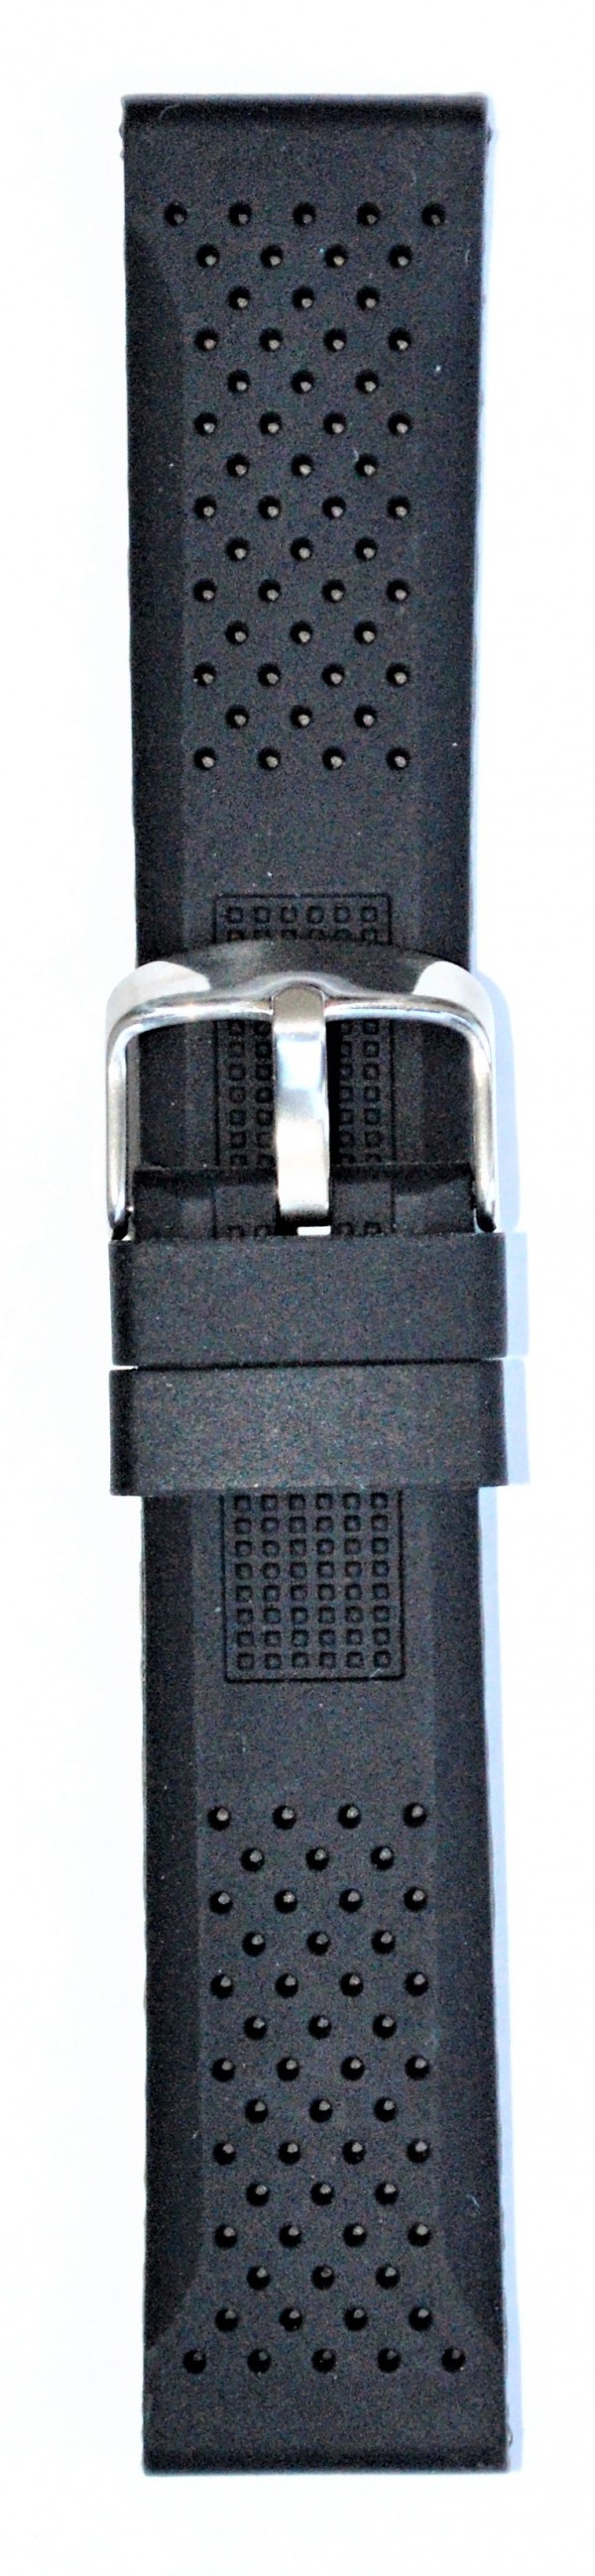 Silikonski kaiš - SK 22.16 Crna boja 22mm